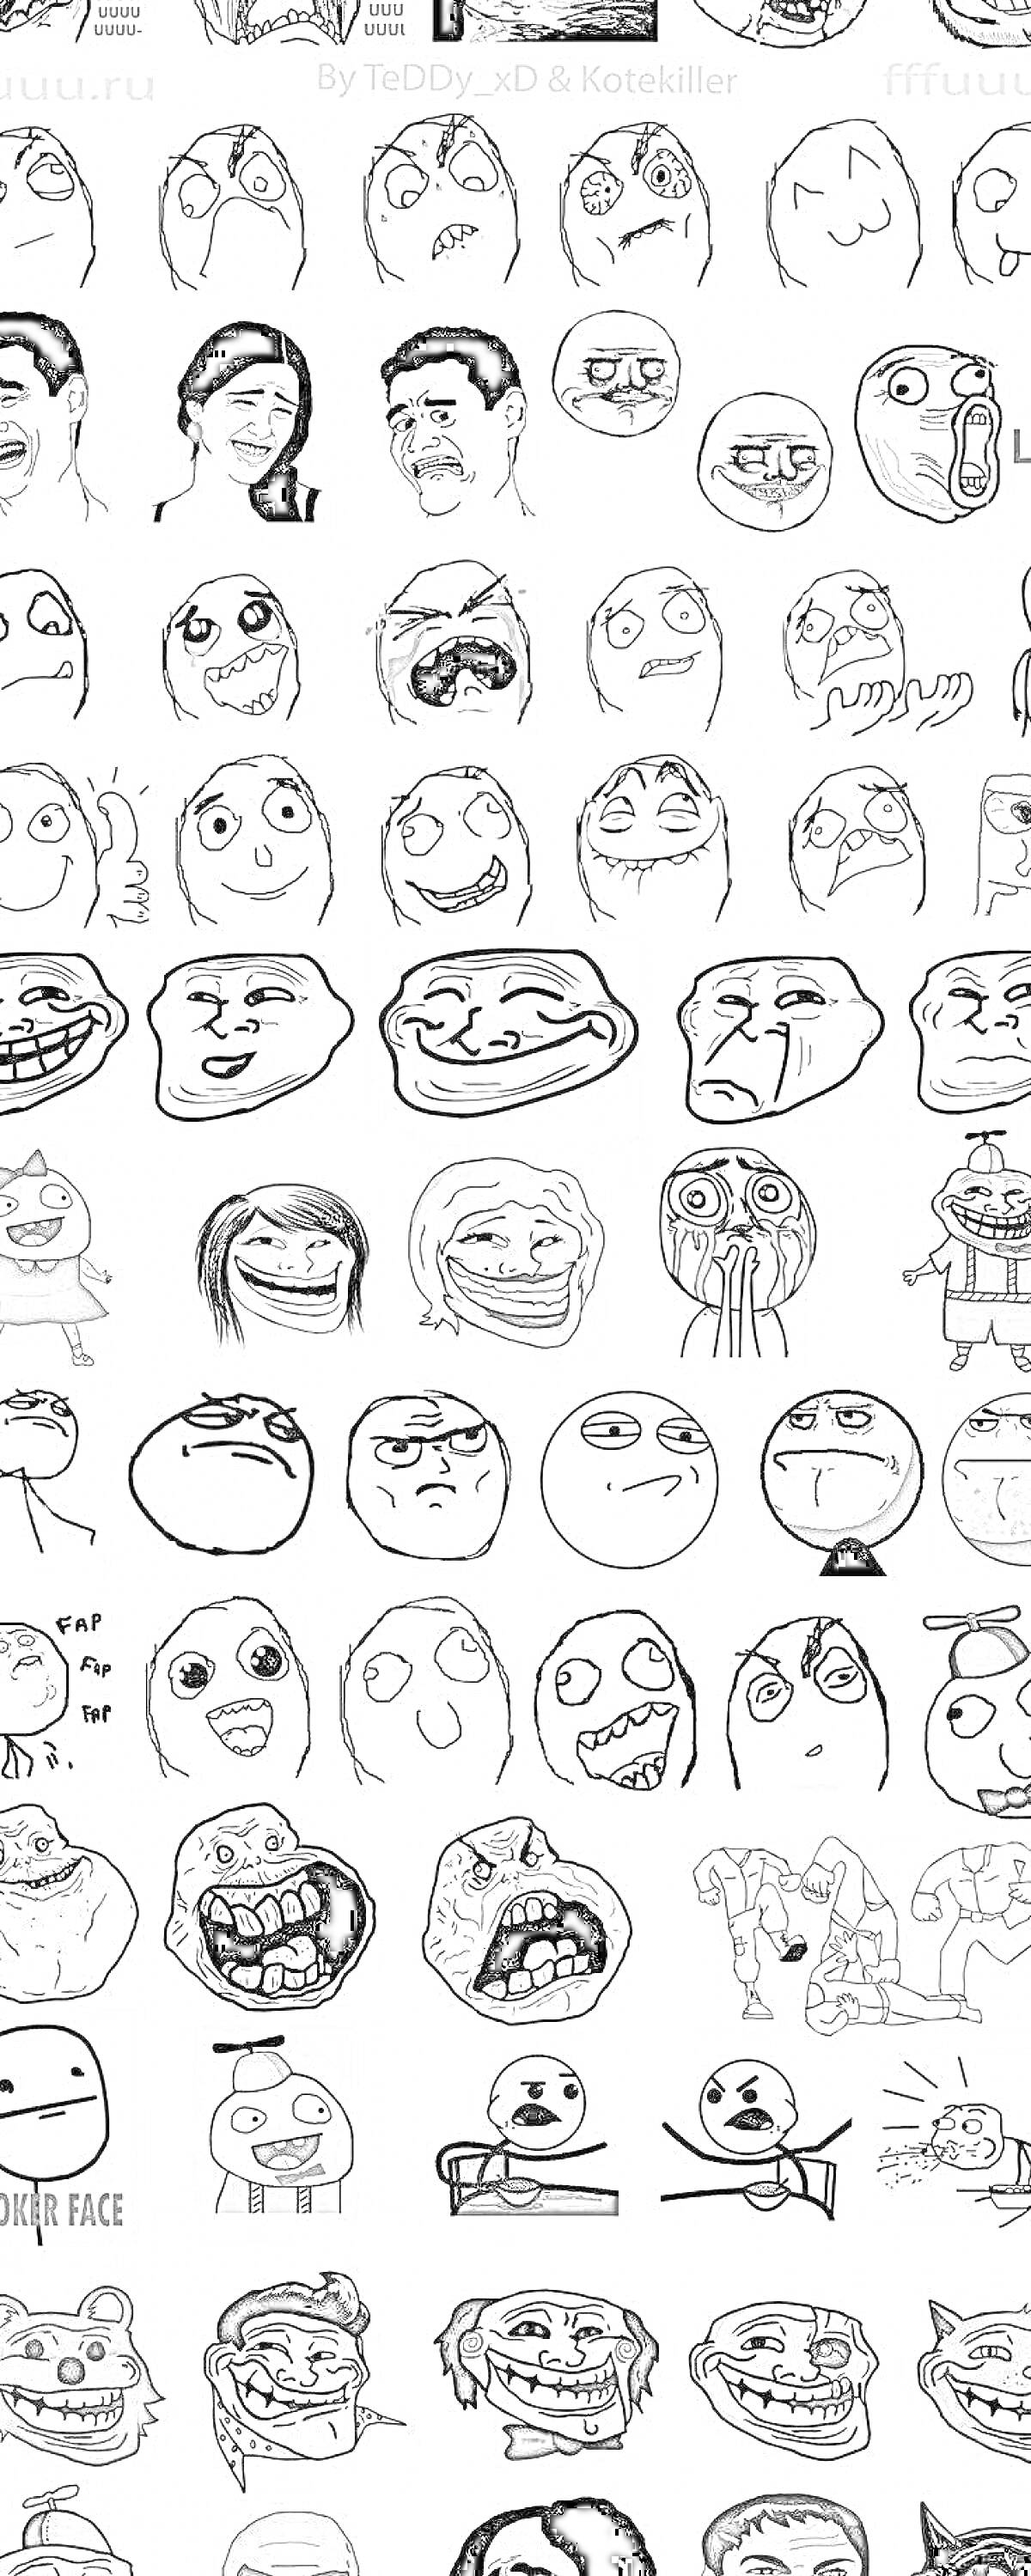 Раскраска Коллекция мемов тролль фейс - различные персонажи и выражения лиц, такие как 